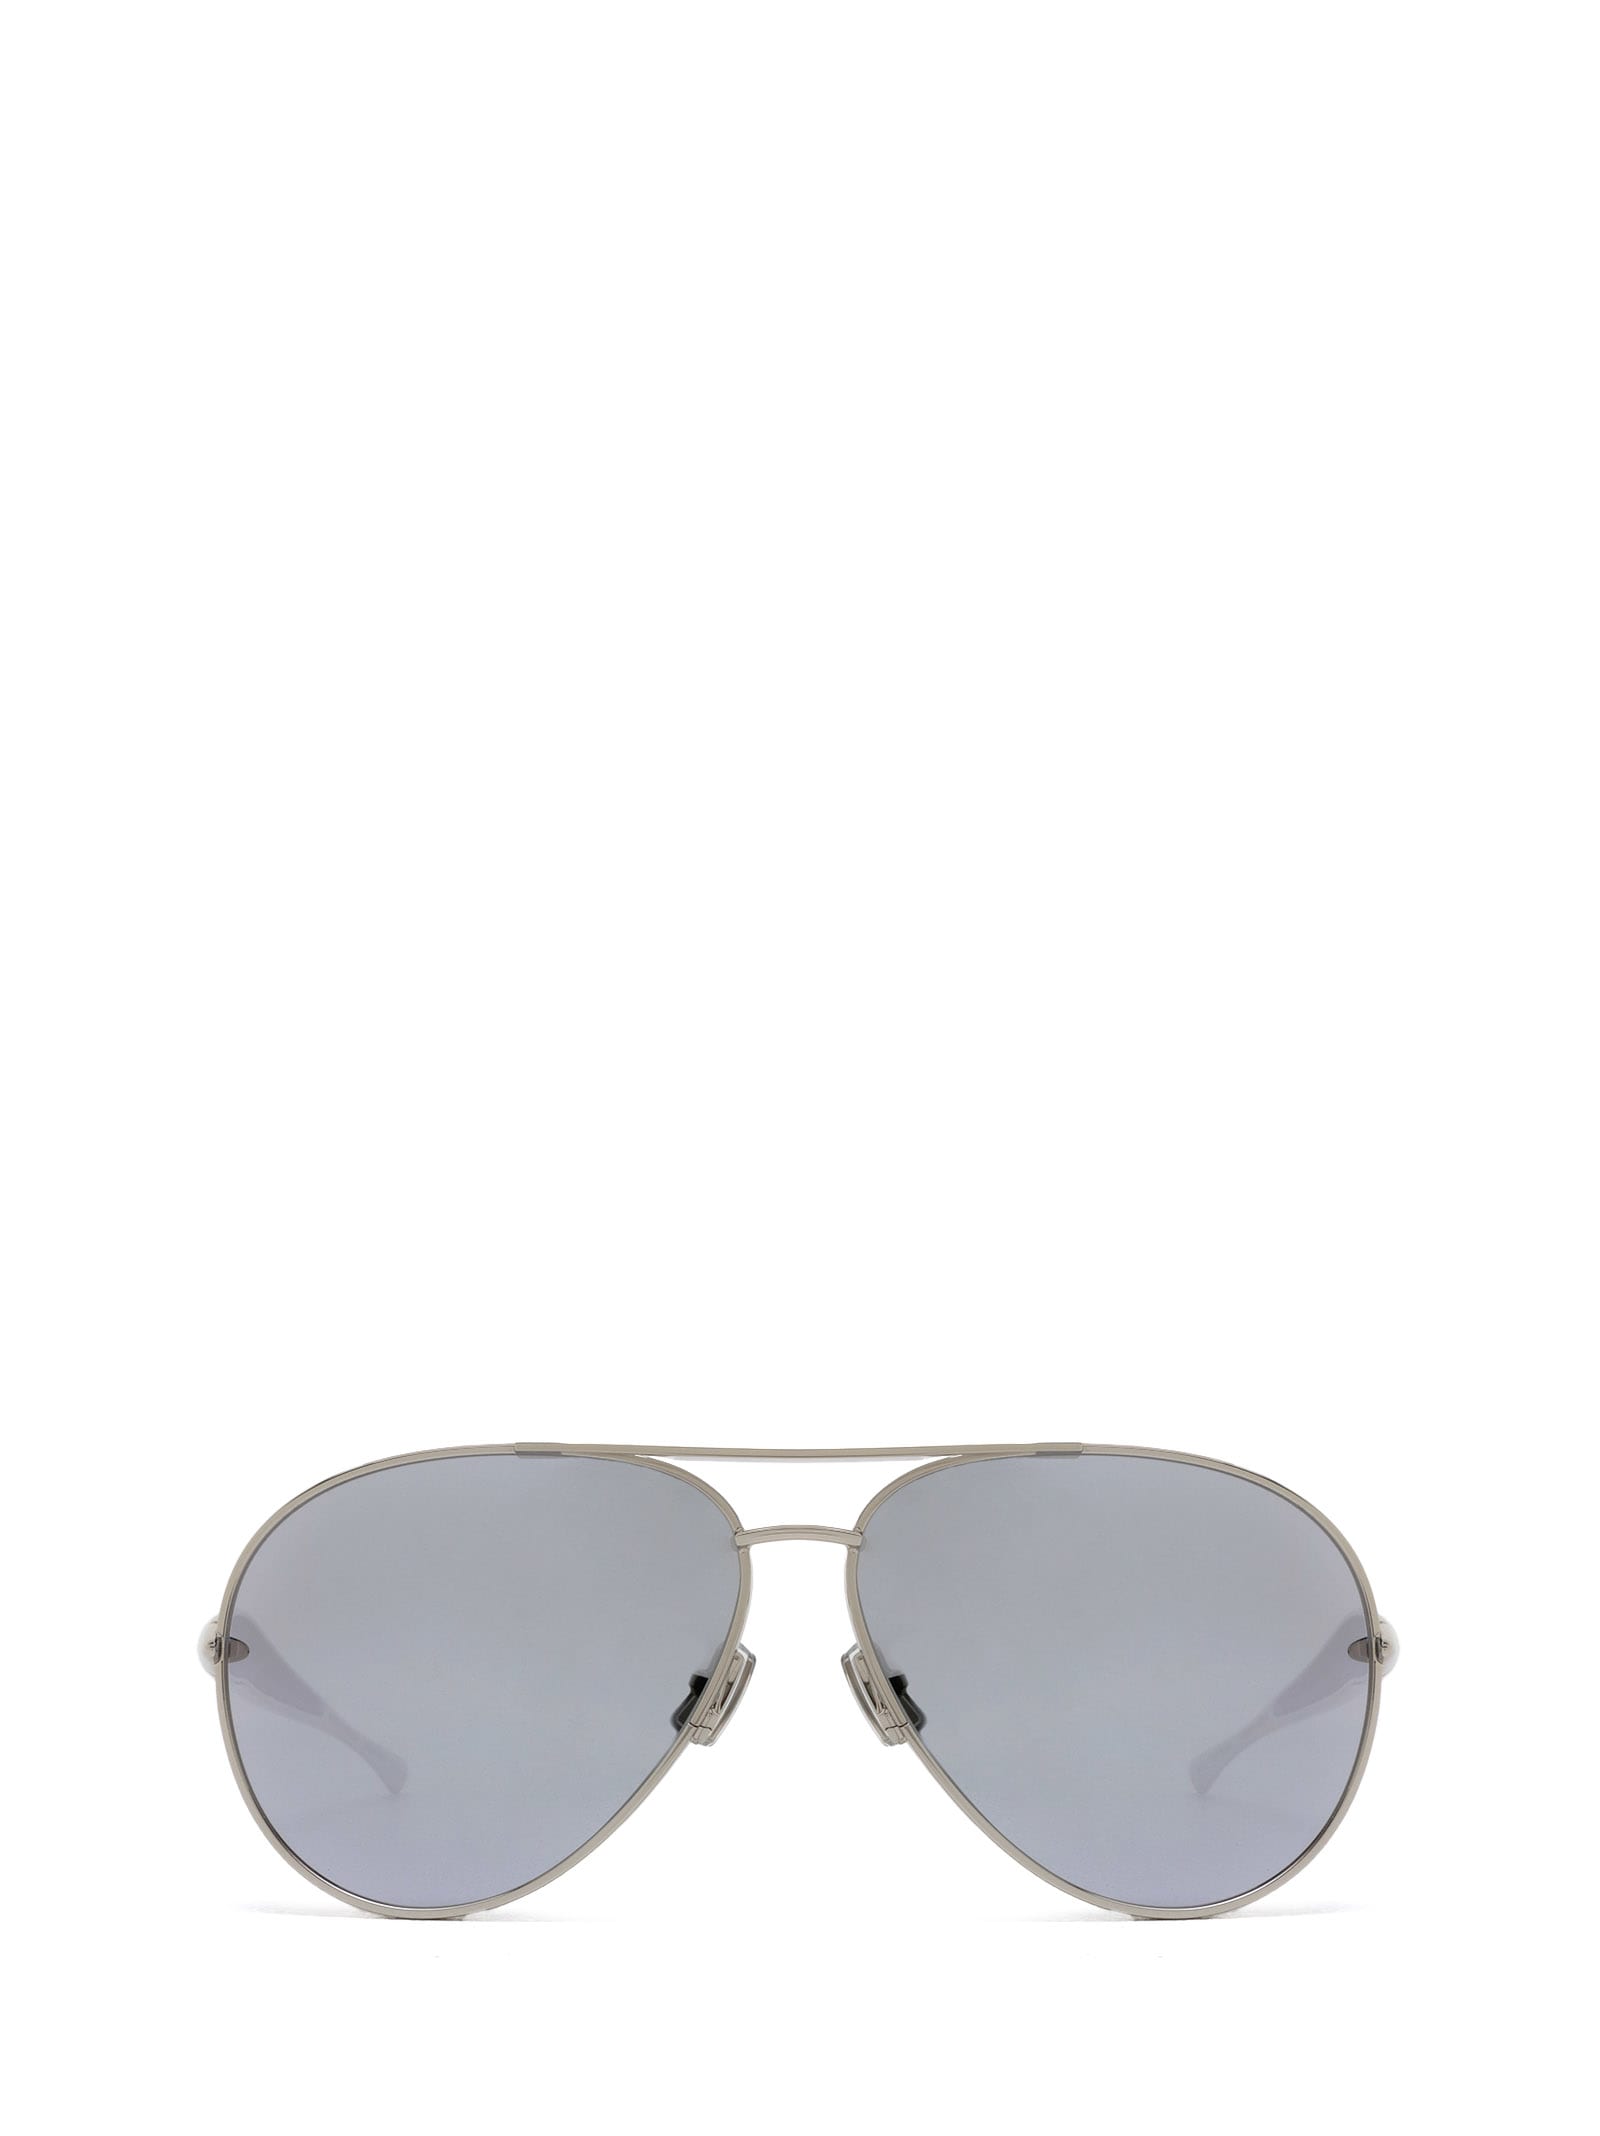 Bv1305s Silver Sunglasses